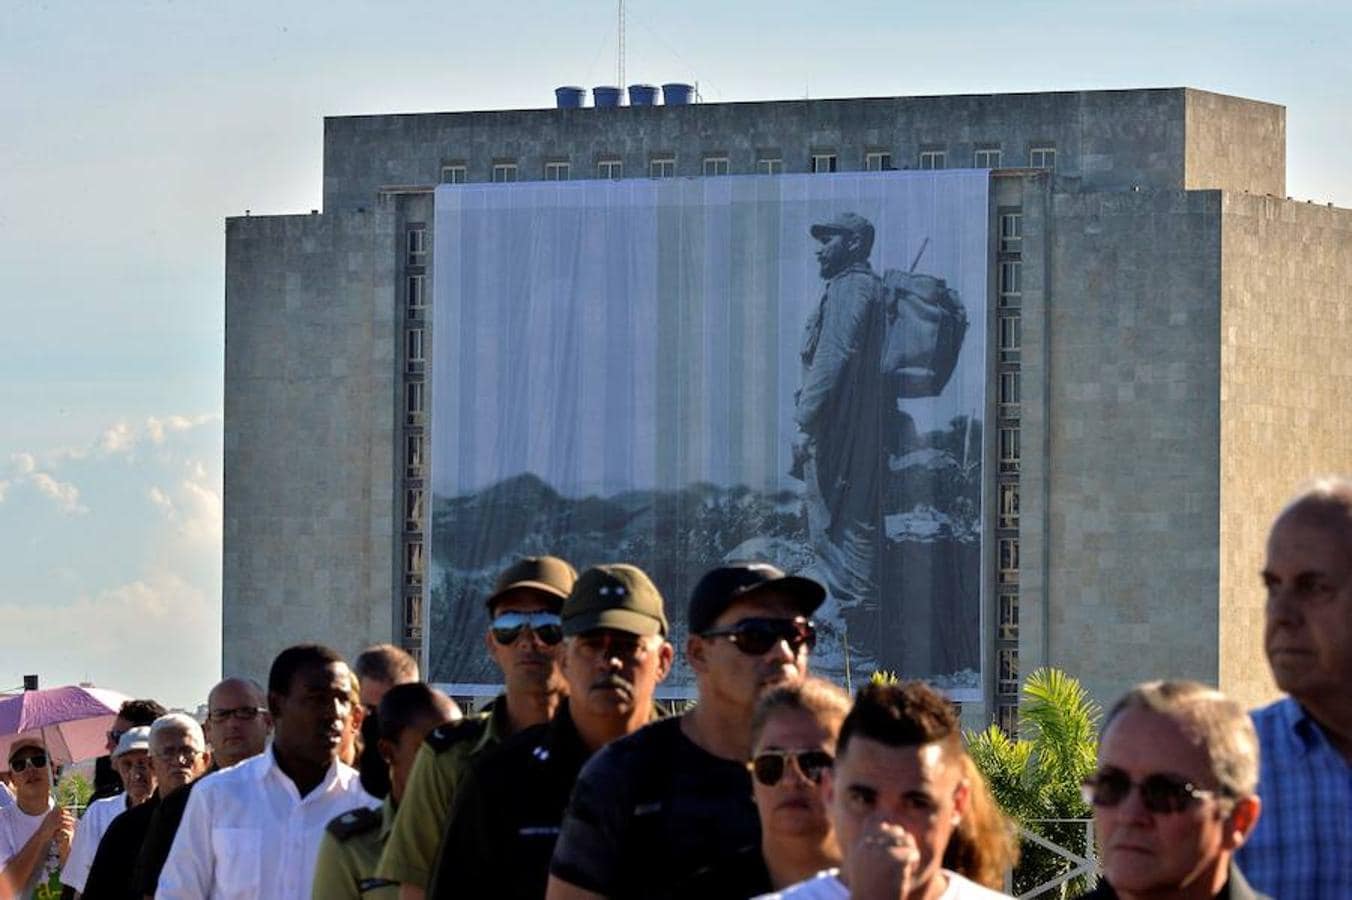 El acto en el Memorial José Martí supone el pistoletazo de salida de una semana de duelo en Cuba por la muerte el viernes. AFP